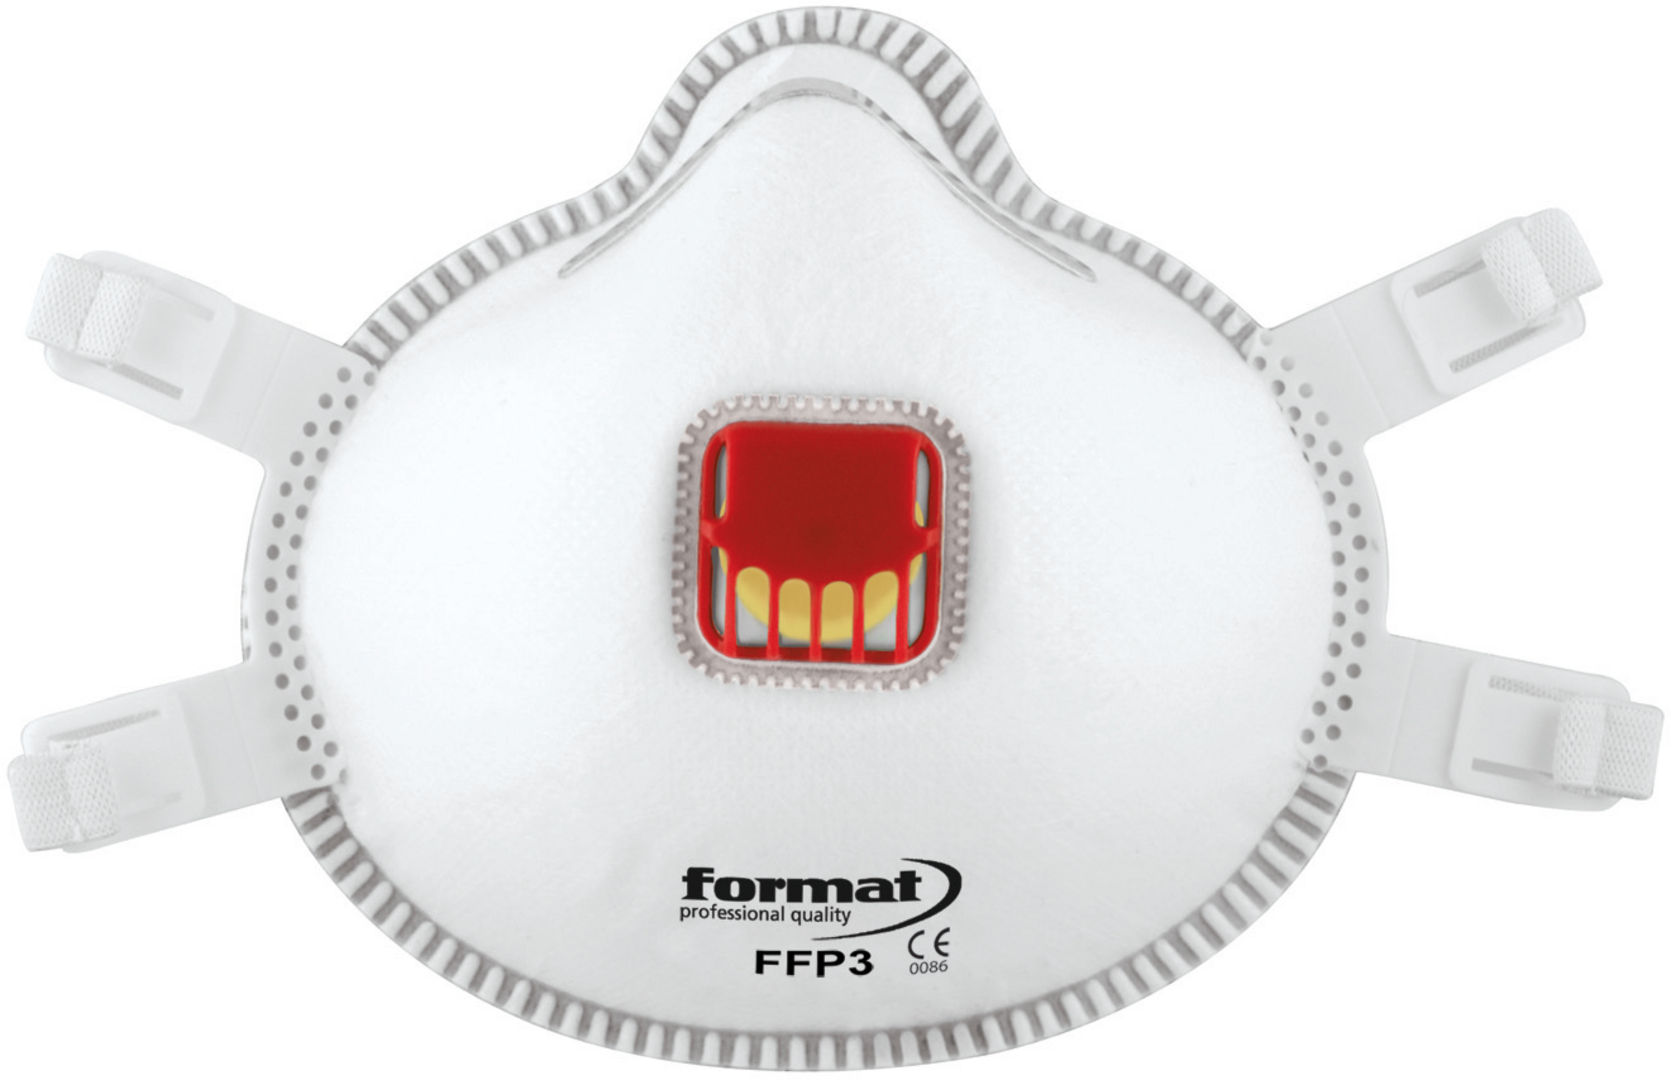 FORMAT Atemschutzkonturmaske FFP3, mit Ventil